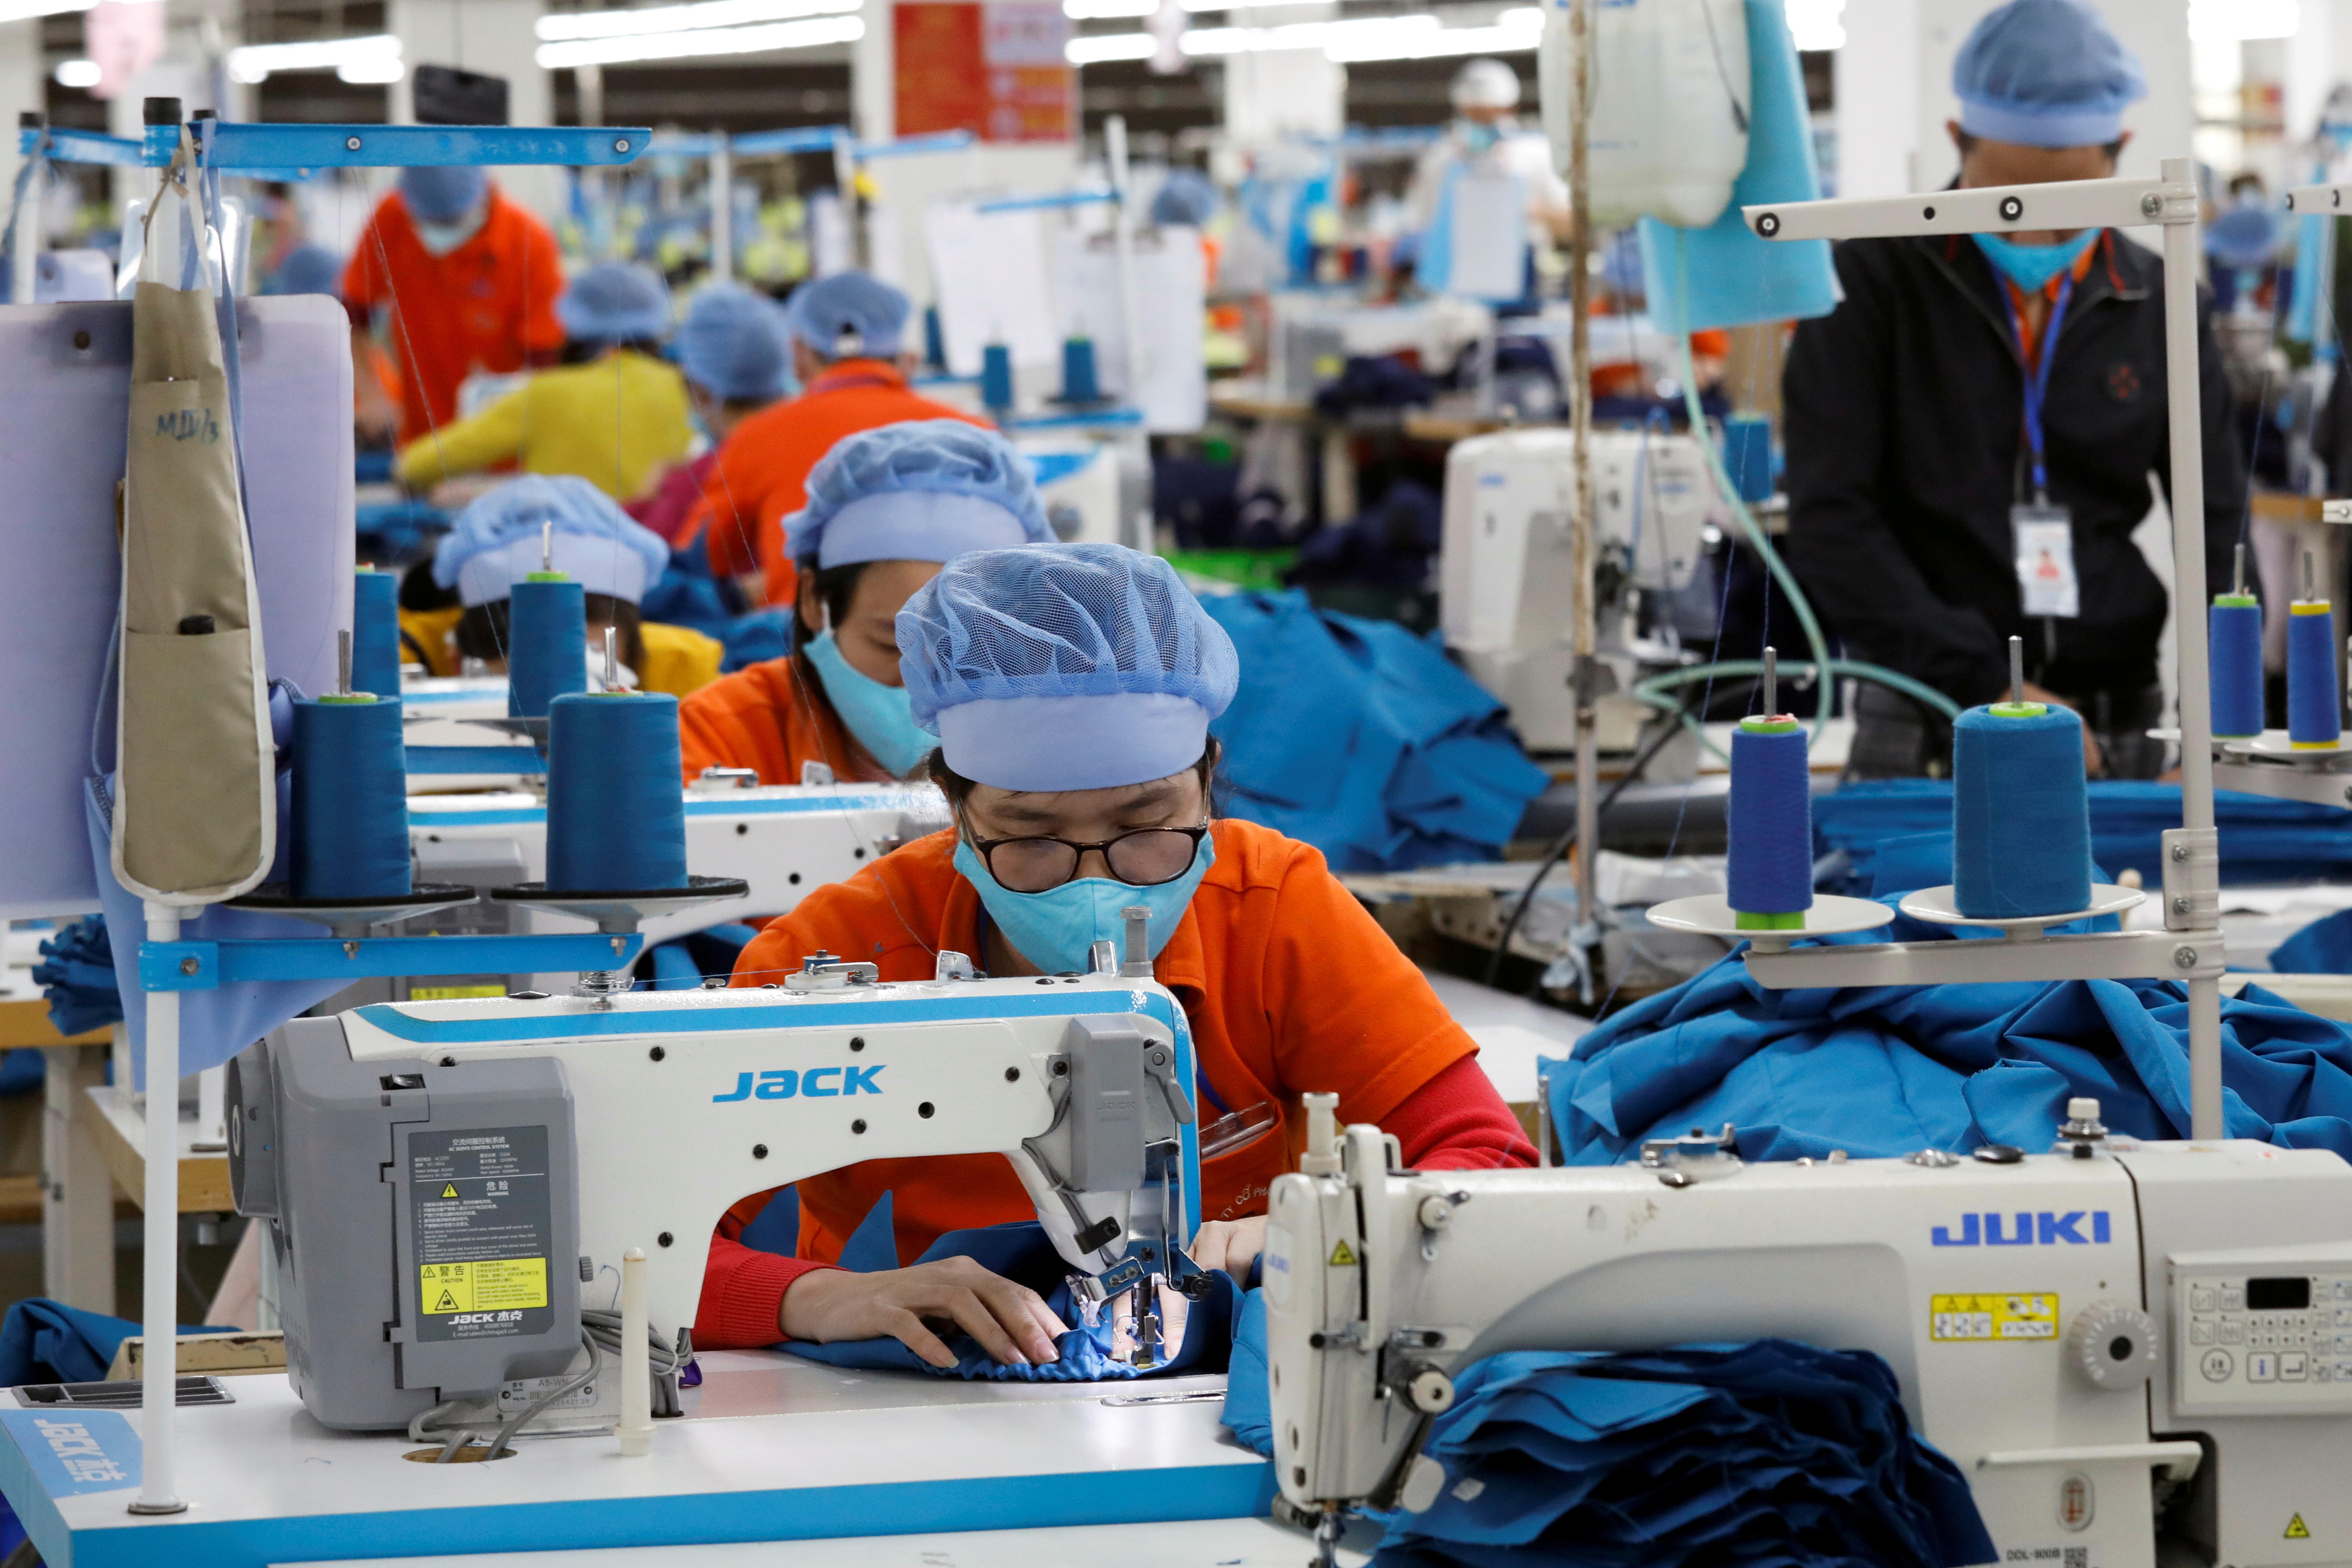 Labourers work at Hung Viet garment export factory in Hung Yen province, Vietnam December 30, 2020. REUTERS/Kham